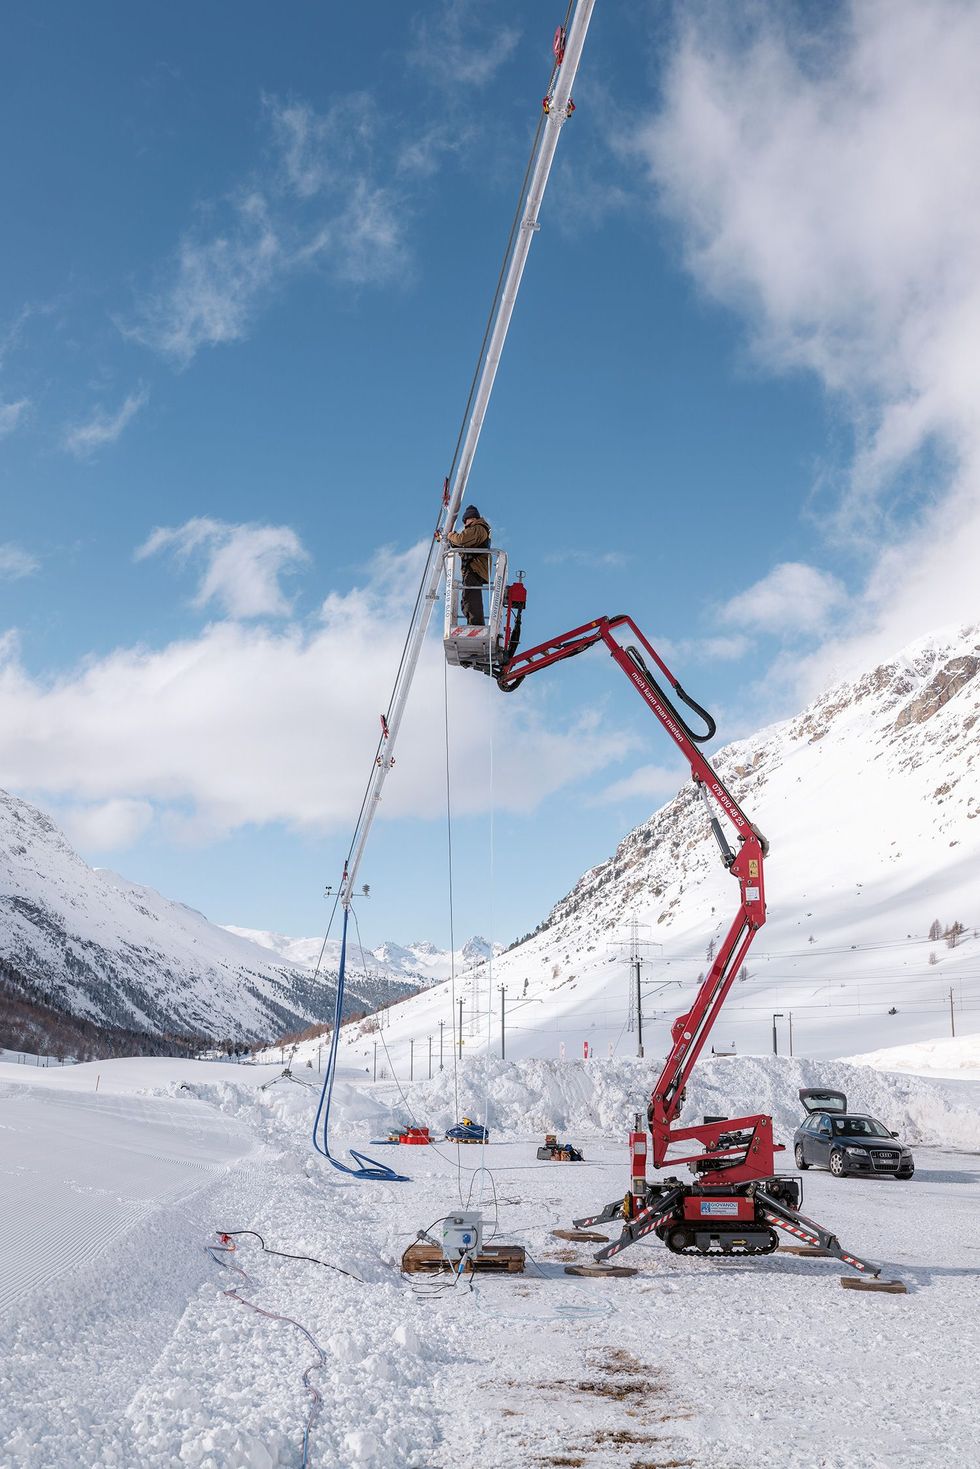 Keller wil smeltwater recyclen Hier test zijn team een prototype van een sproeikabel die boven de gletsjer komt te hangen Elk jaar kan het apparaat een sneeuwlaag van negen meter produceren